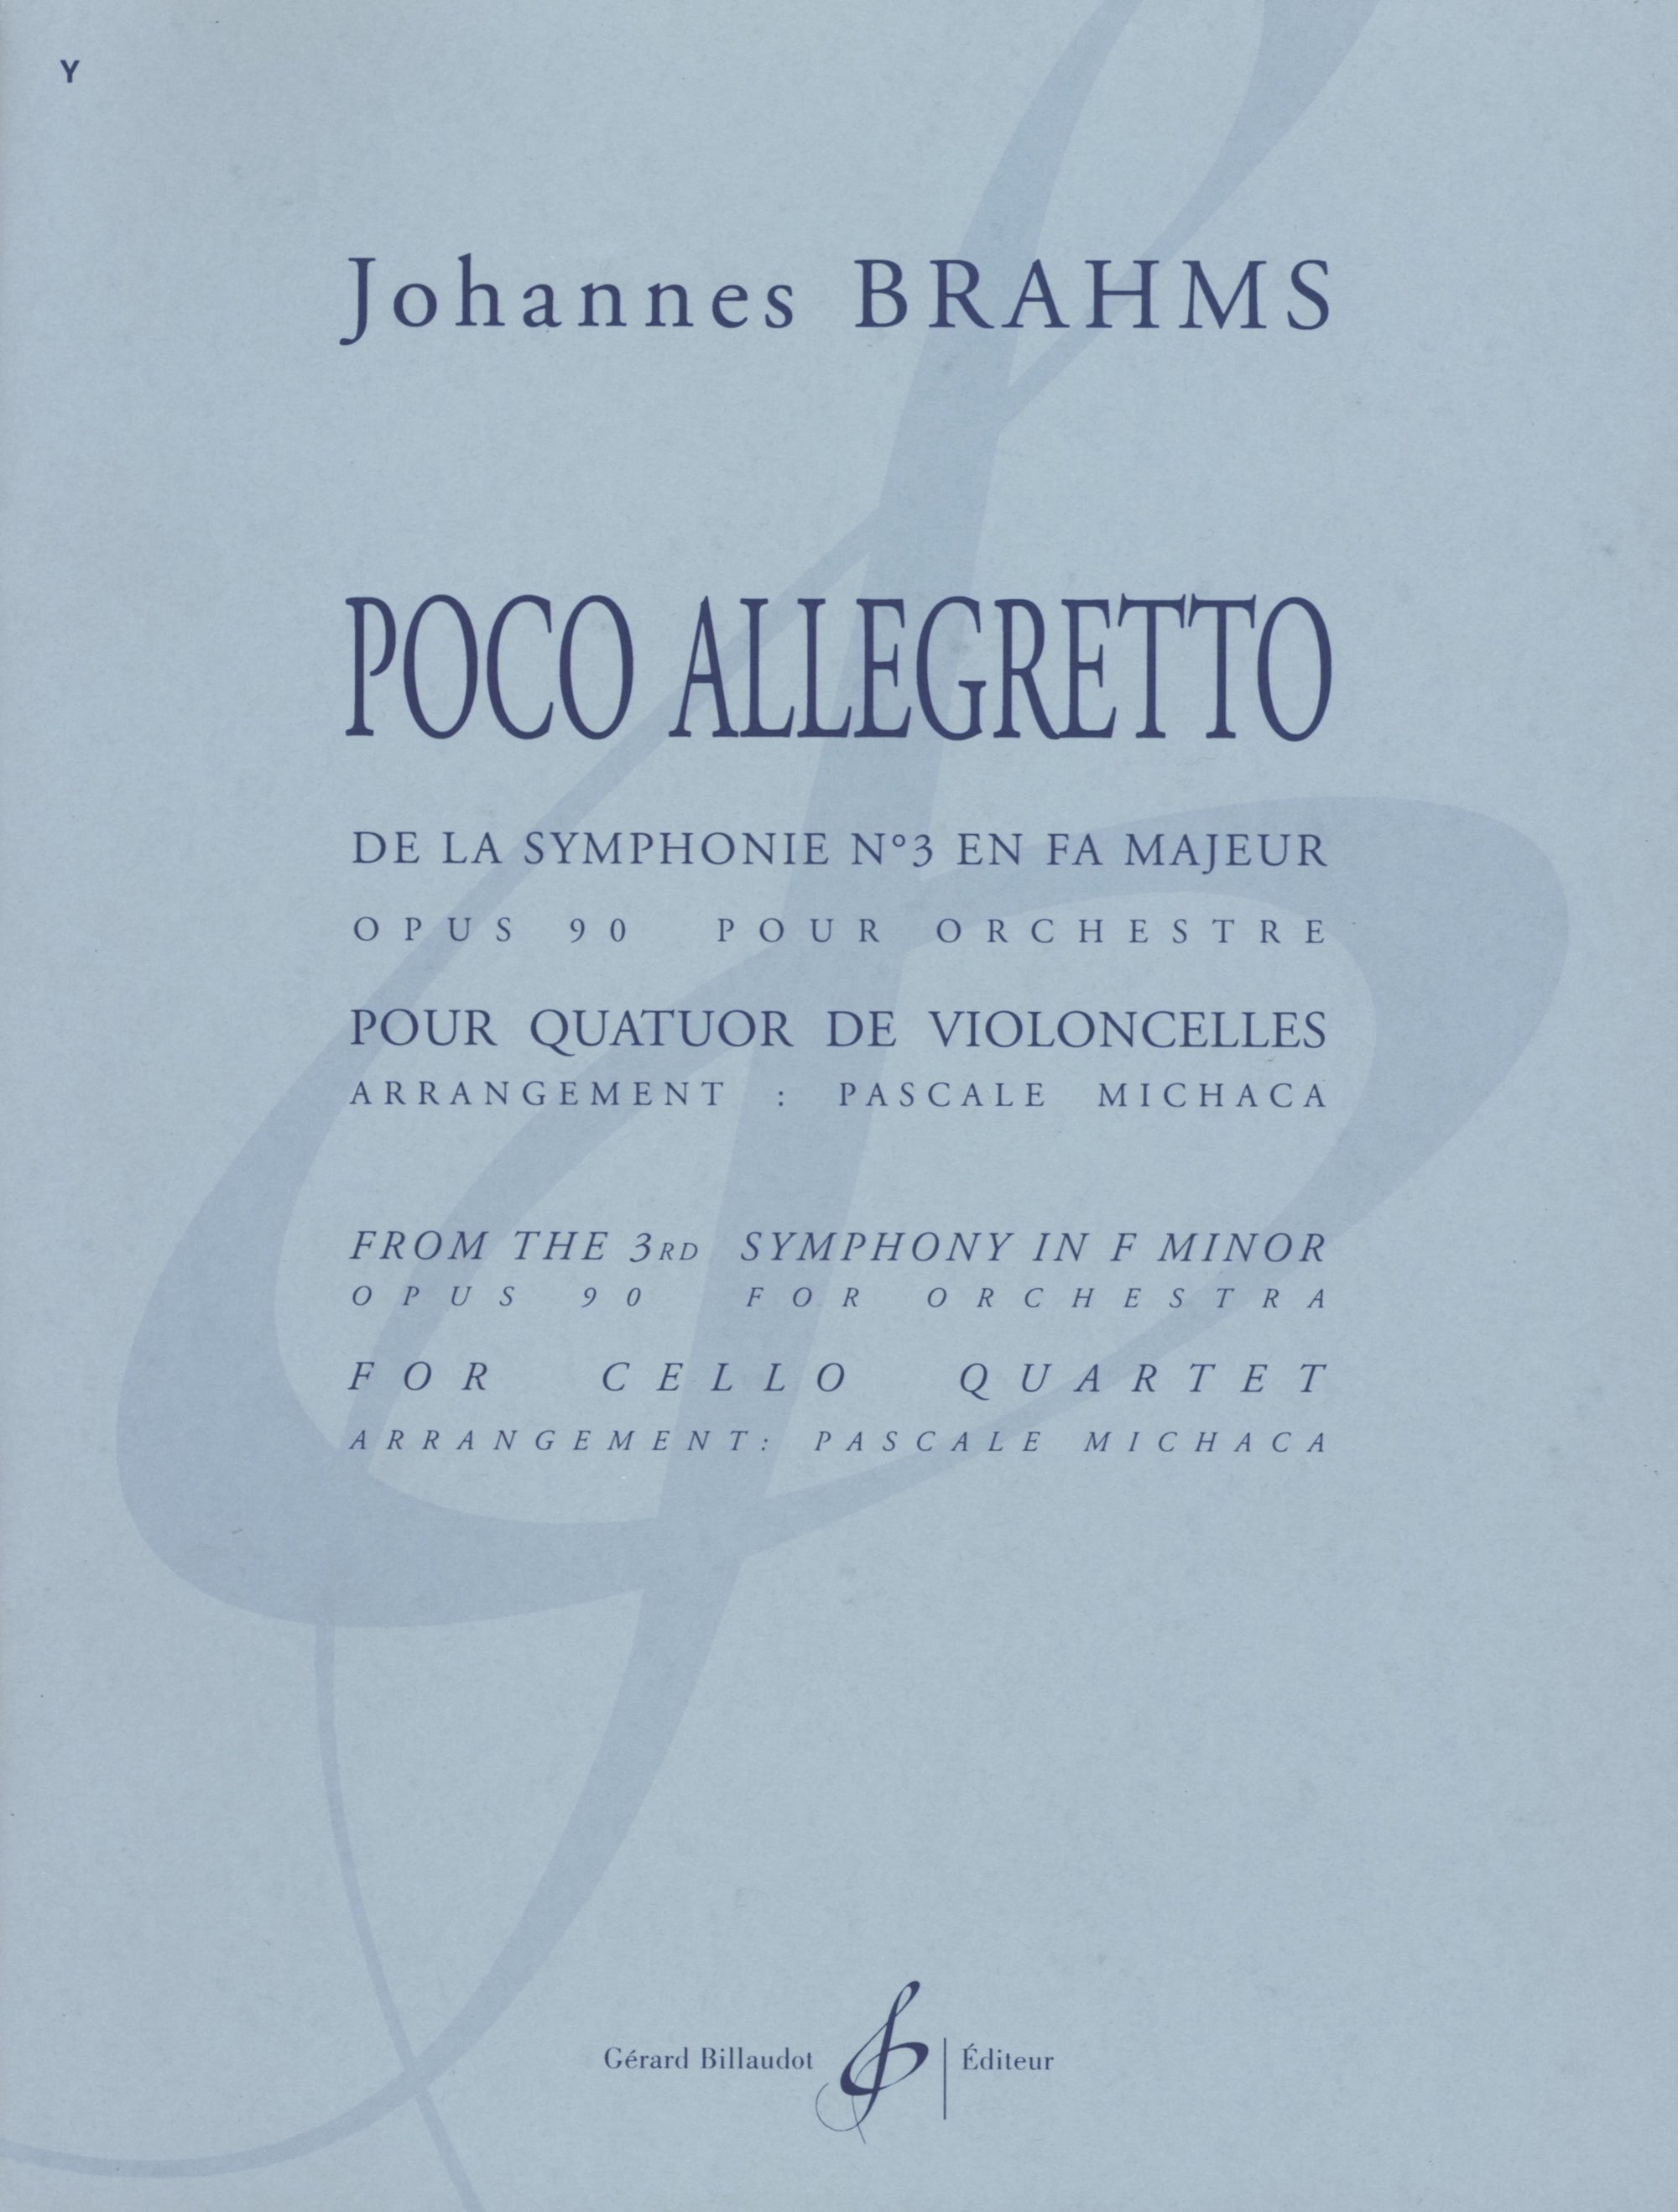 Brahms: Poco Allegretto from Symphony No. 3 (arr. for cello quartet)